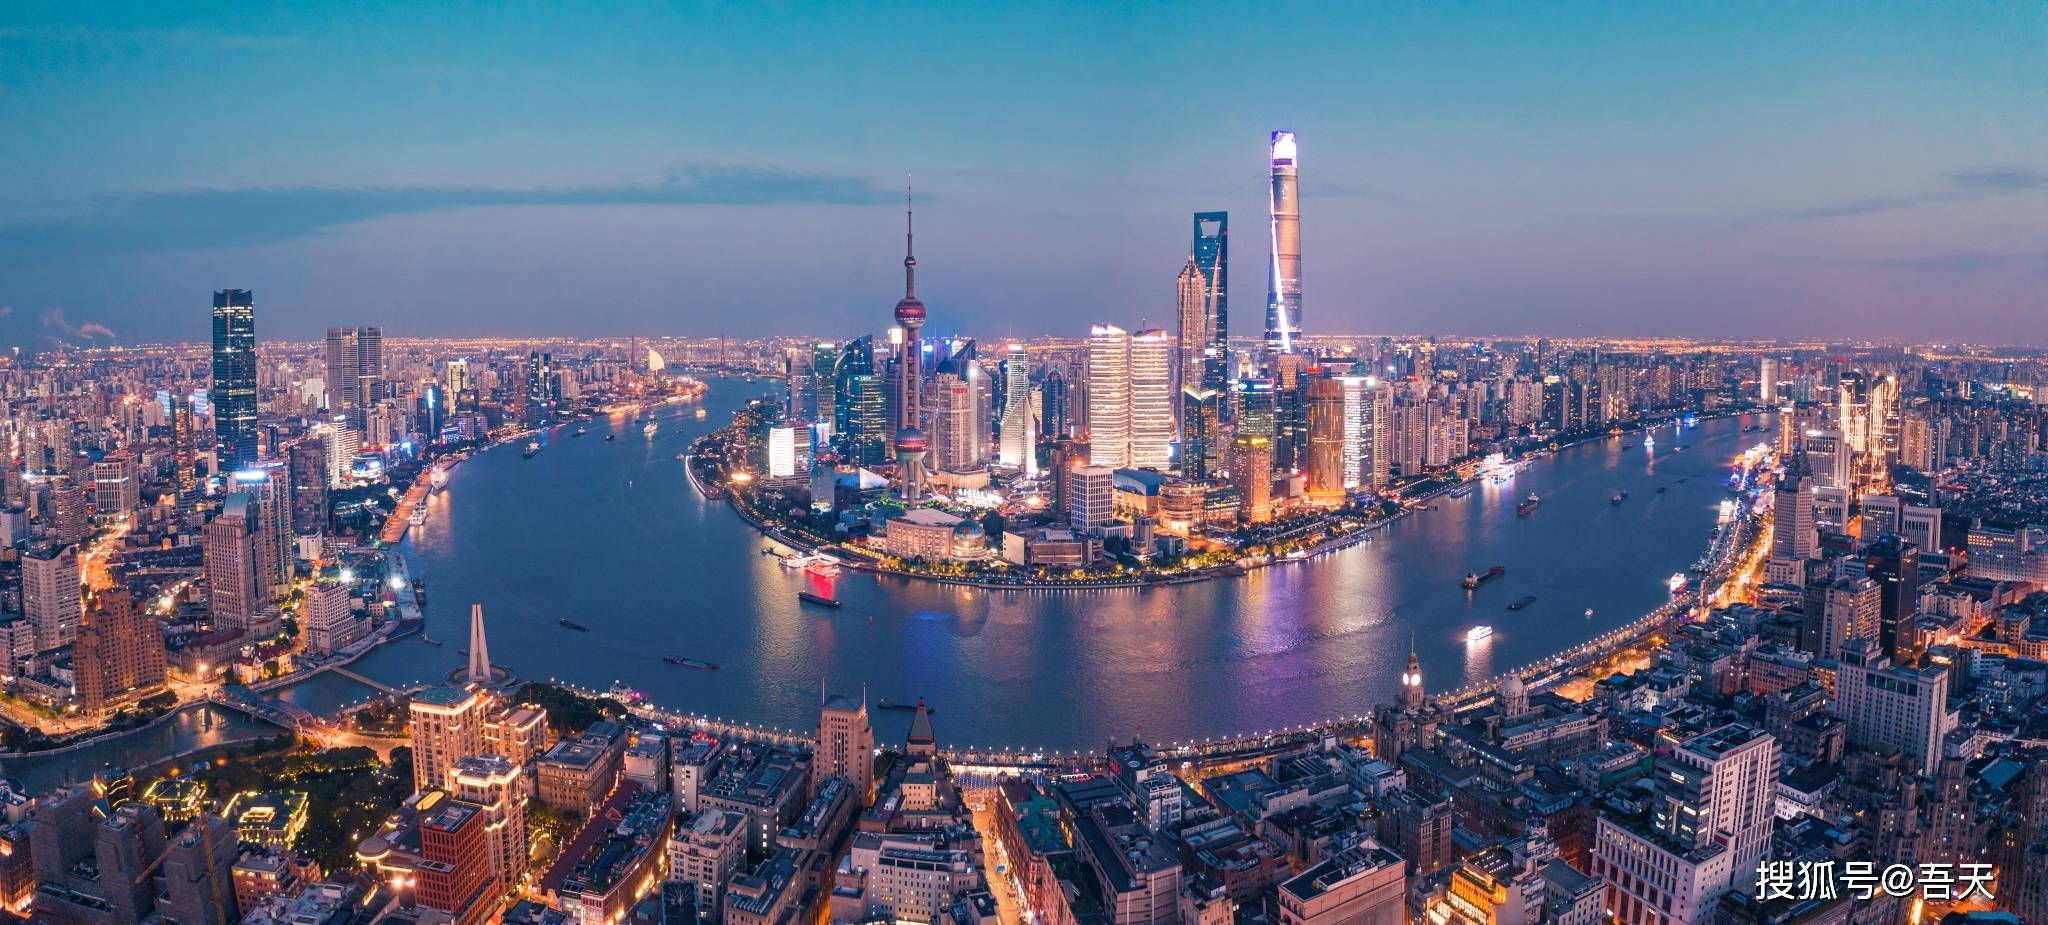 武汉都市圈和南京都市圈对比：除经济外，武汉都市圈有哪些潜力？